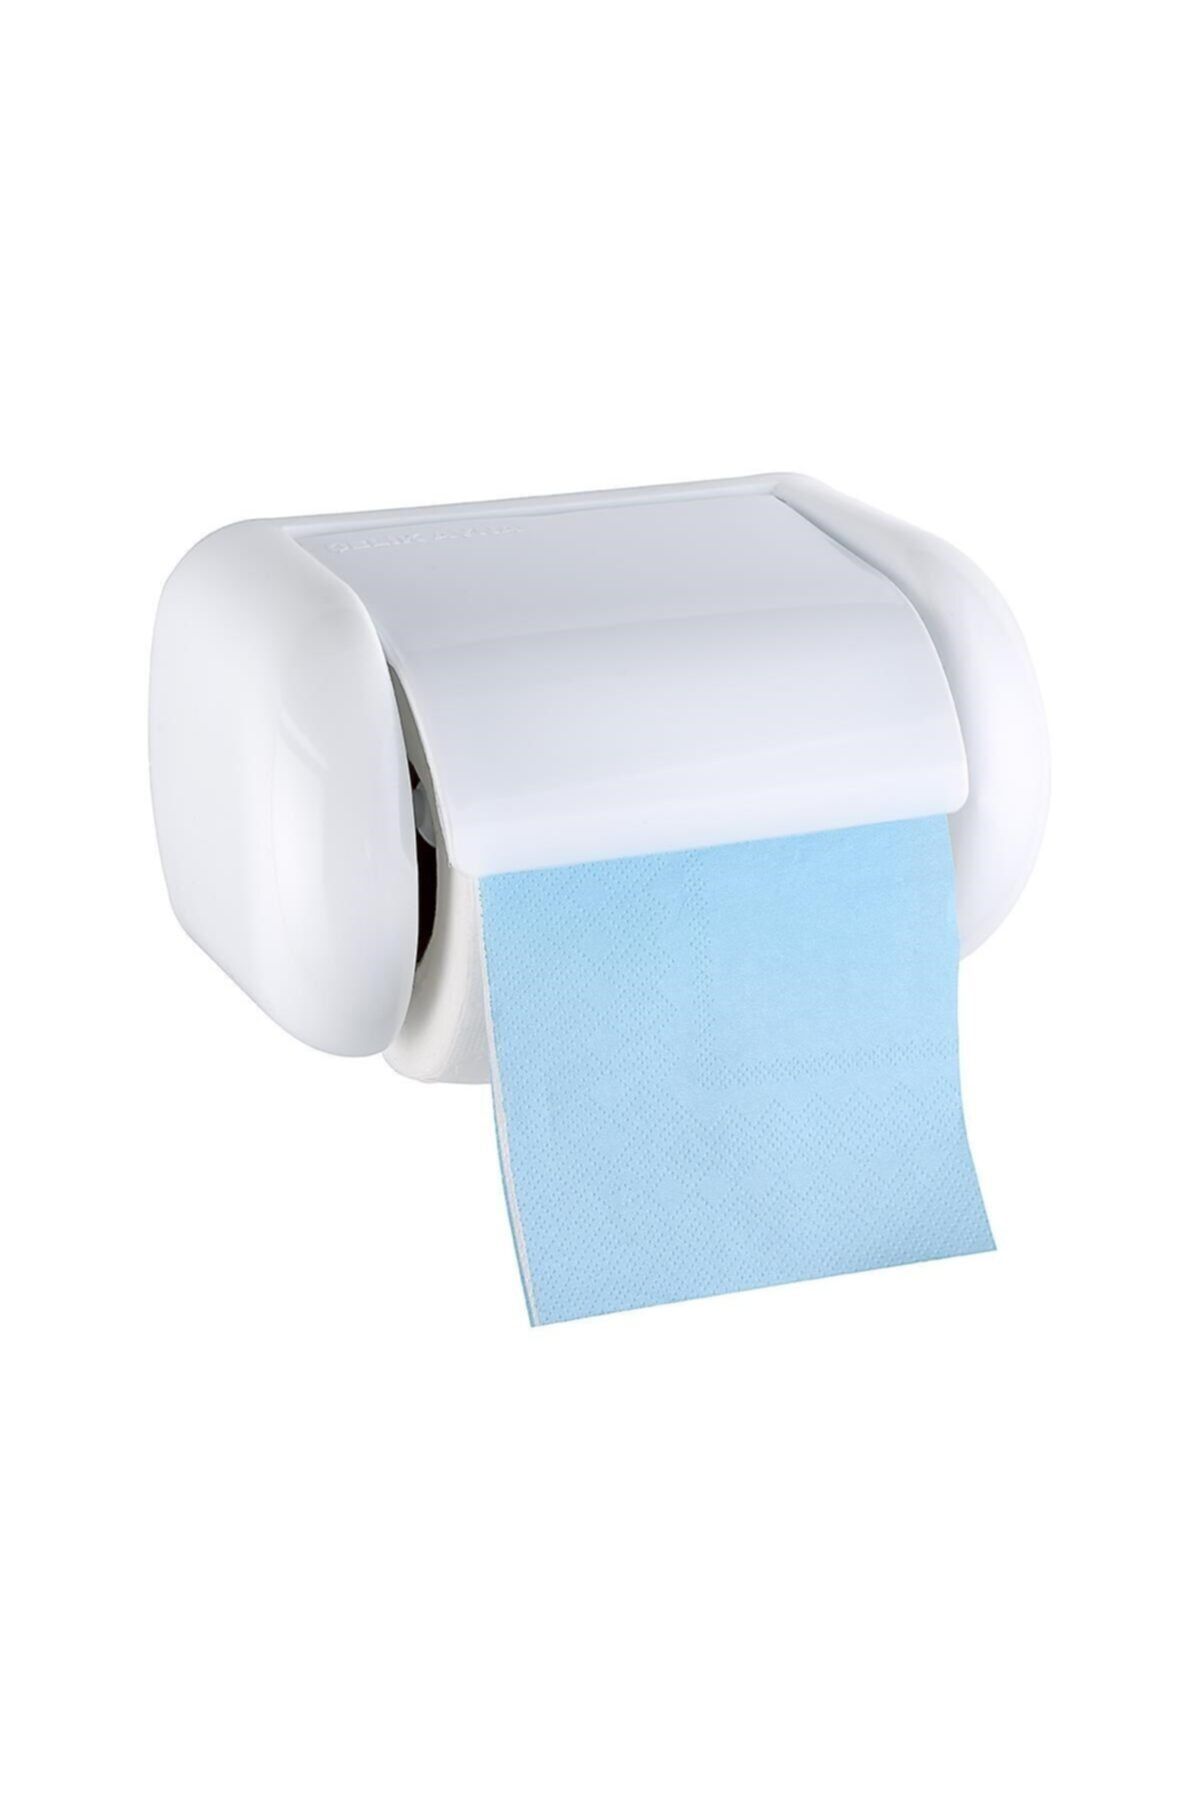 Genel Markalar Kapaklı Rulo Tuvalet Kağıdı Tutucu Askısı Standı Tombul Kağıtlık